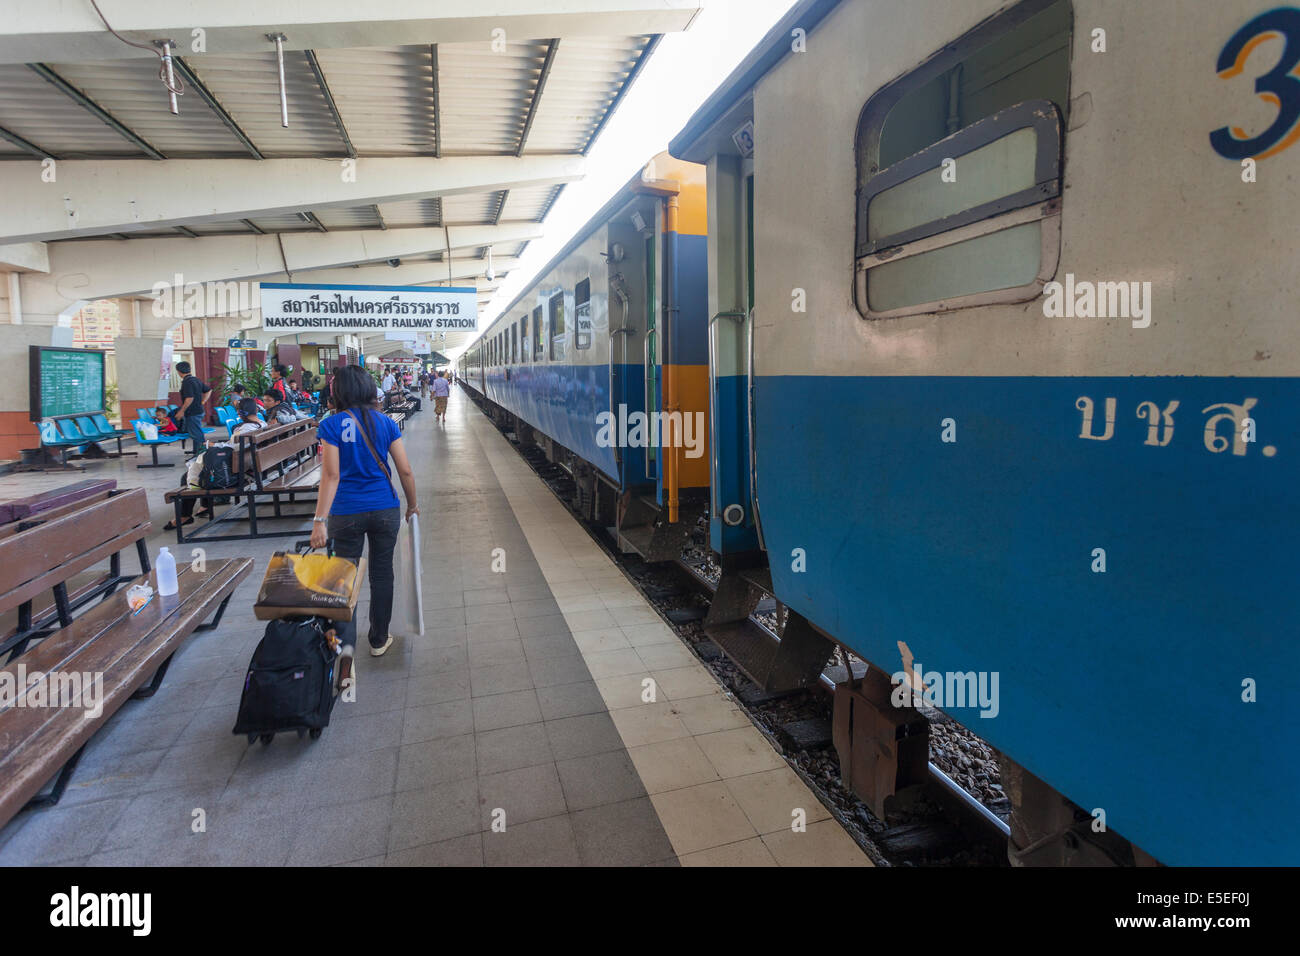 A passenger pulling luggage to a train at Hualamphong Railway station Bangkok Thailand Stock Photo